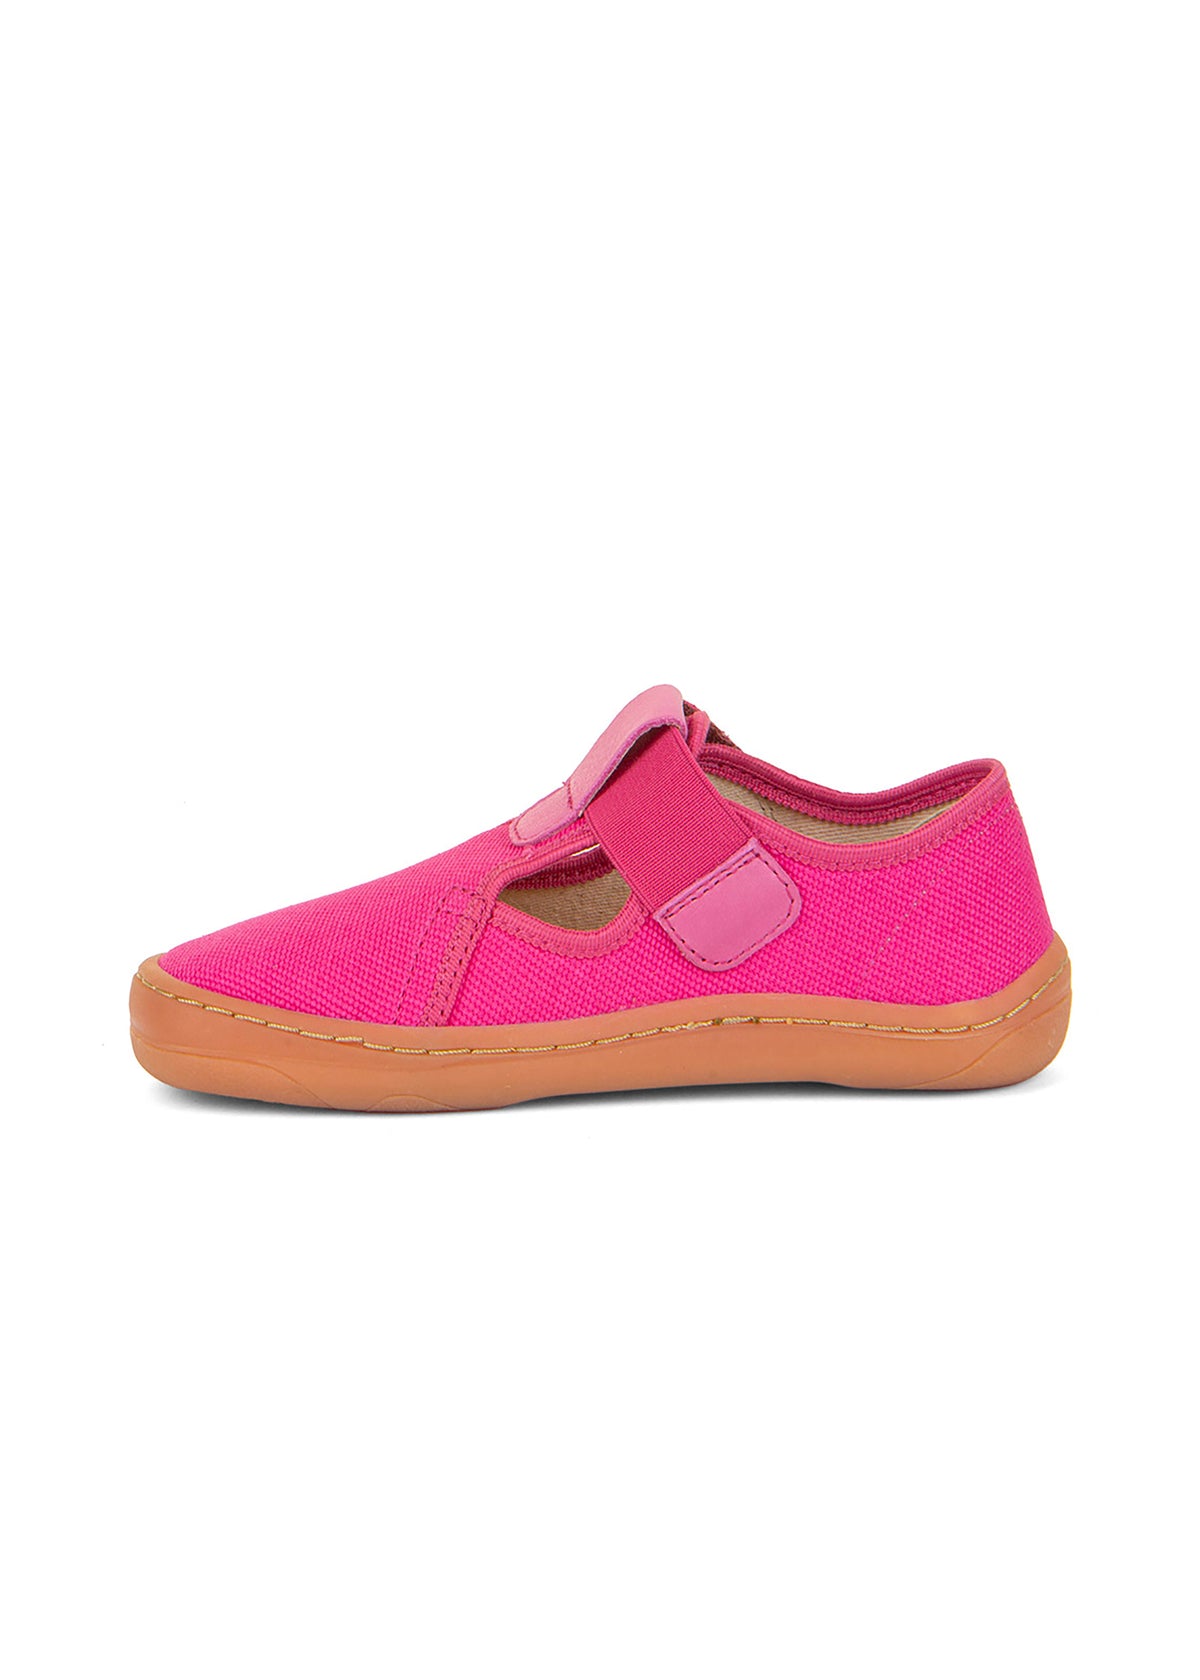 Children's barefoot sneakers - pink, velcro fastening